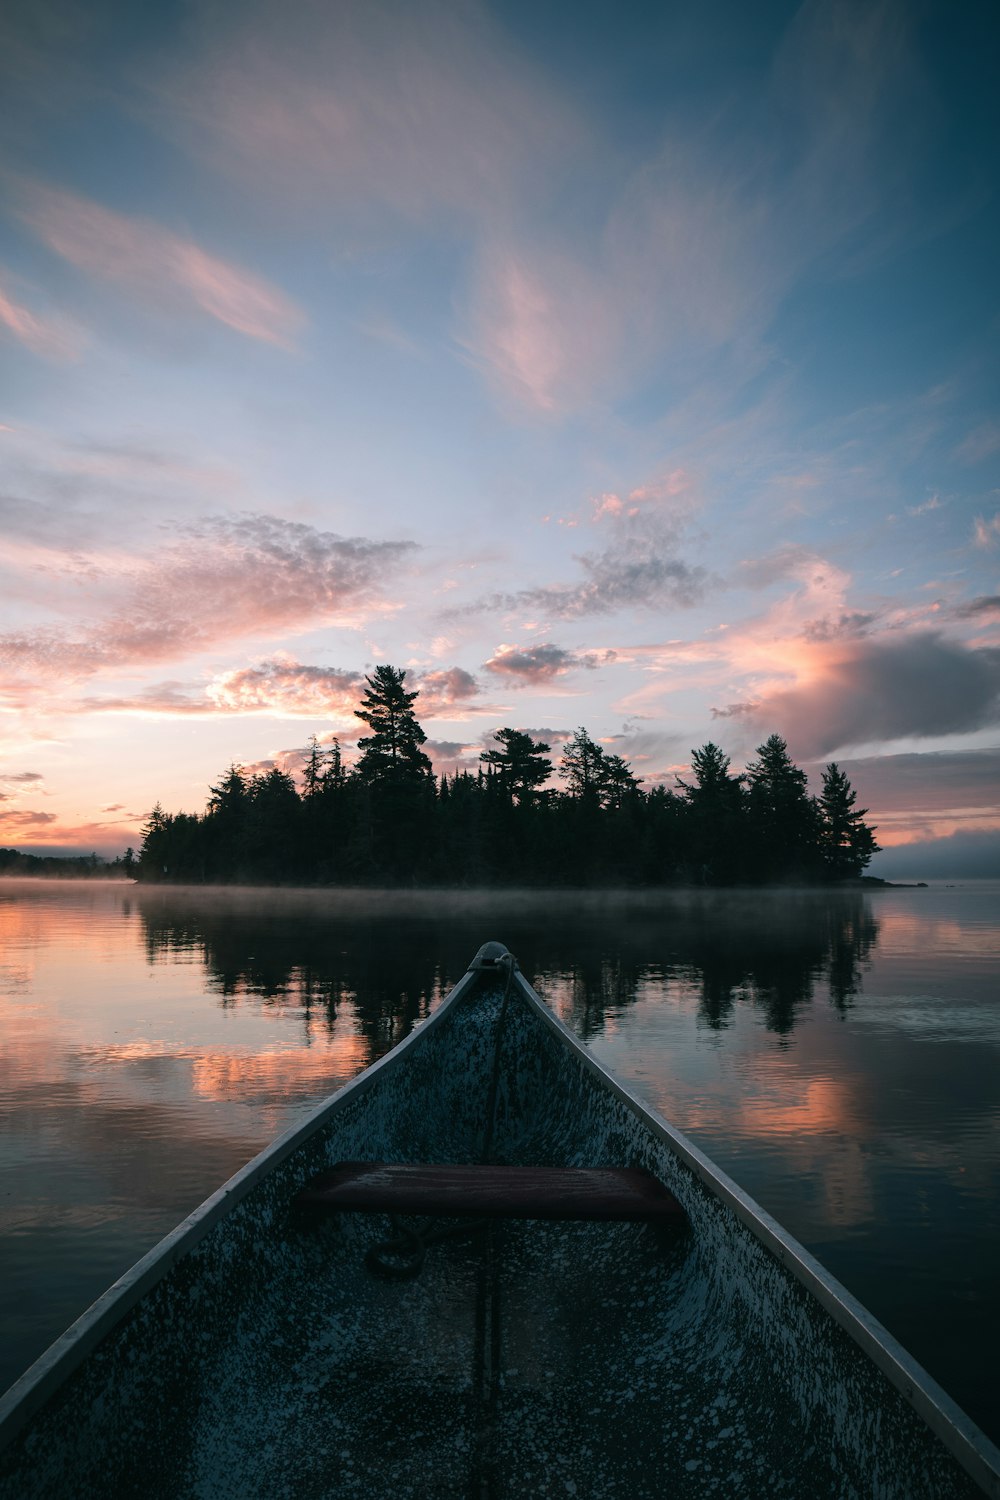 brown canoe on lake during sunset